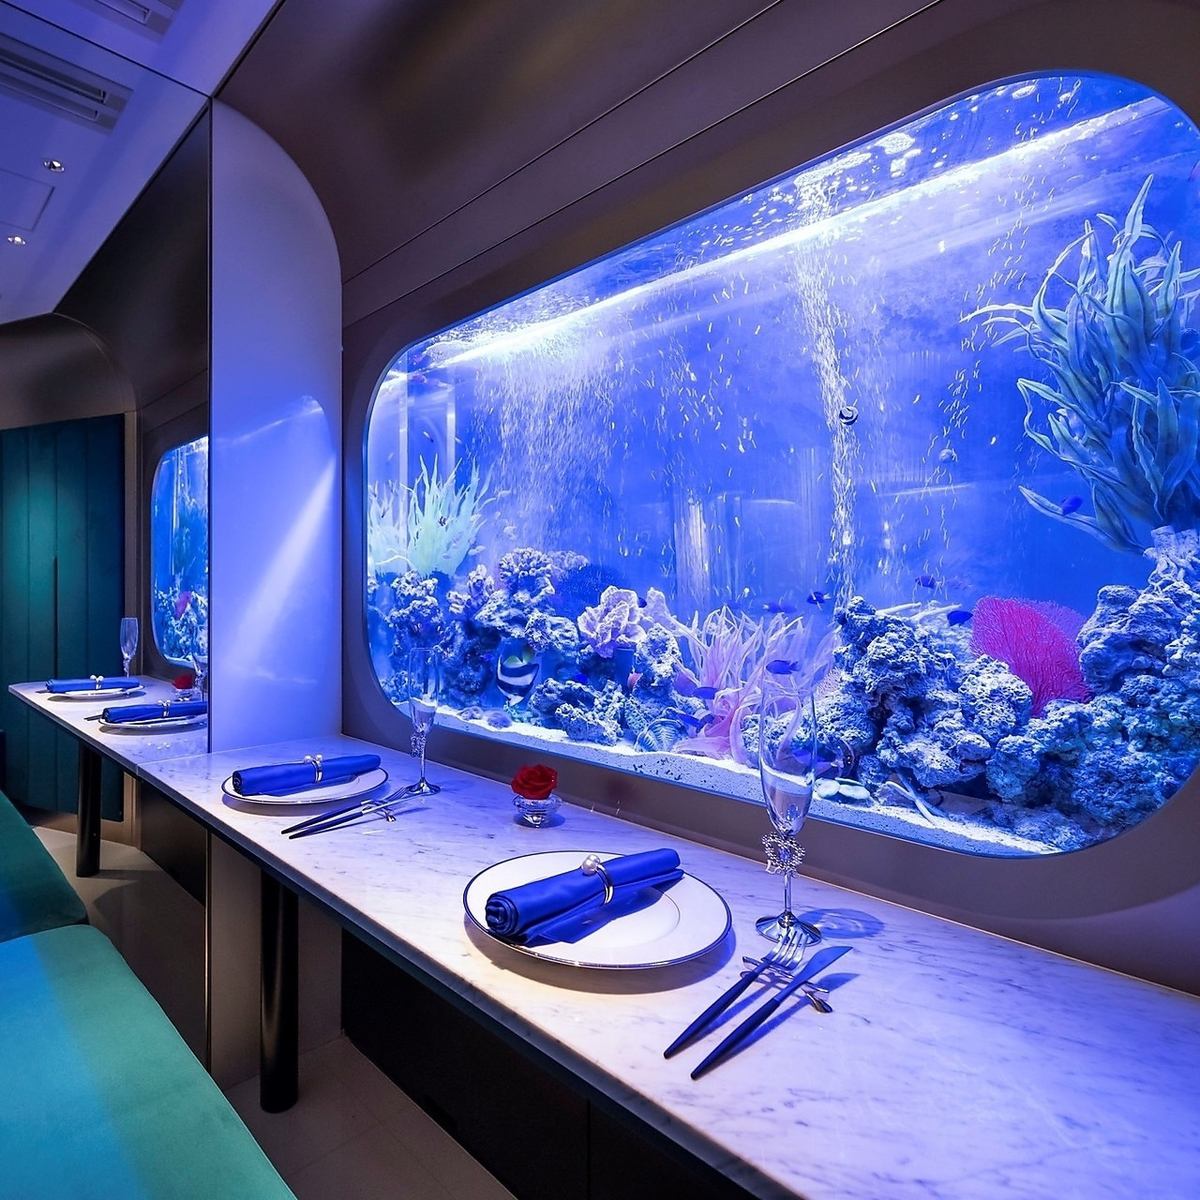 水槽を美しく回遊する魚達が幻想的でロマンチックな空間を演出